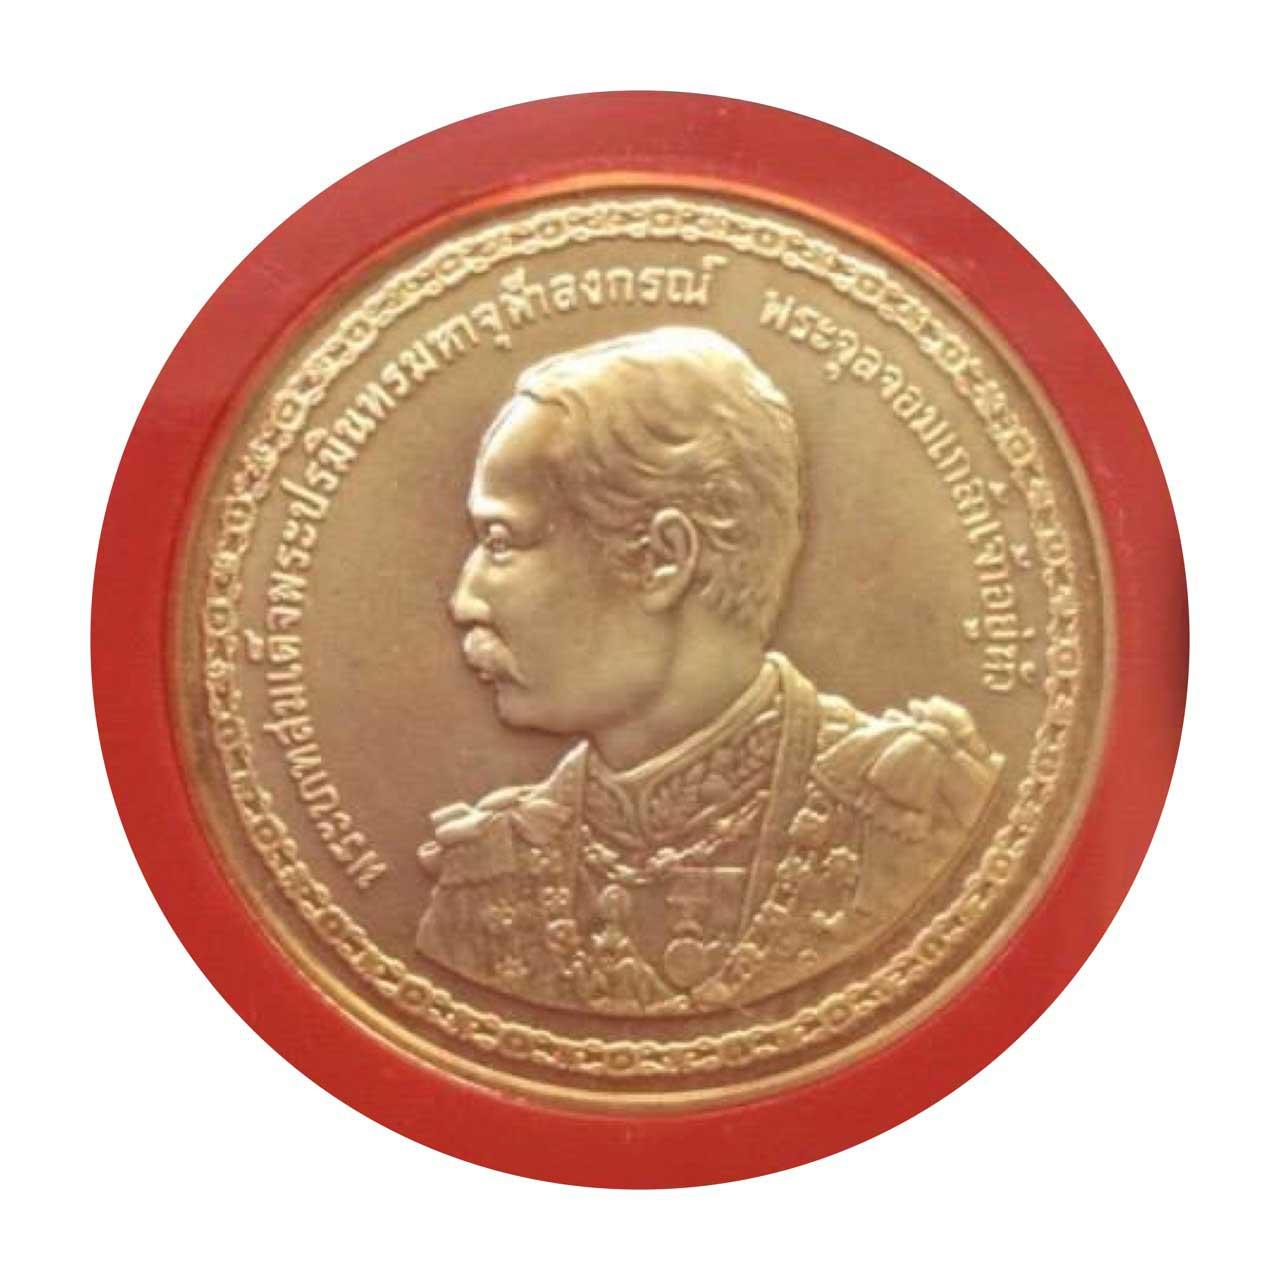 เหรียญกษาปณ์ที่ระลึกทองคำ 150 ปี แห่งวันพระราชสมภพ ร.5 ปี พ.ศ.2546